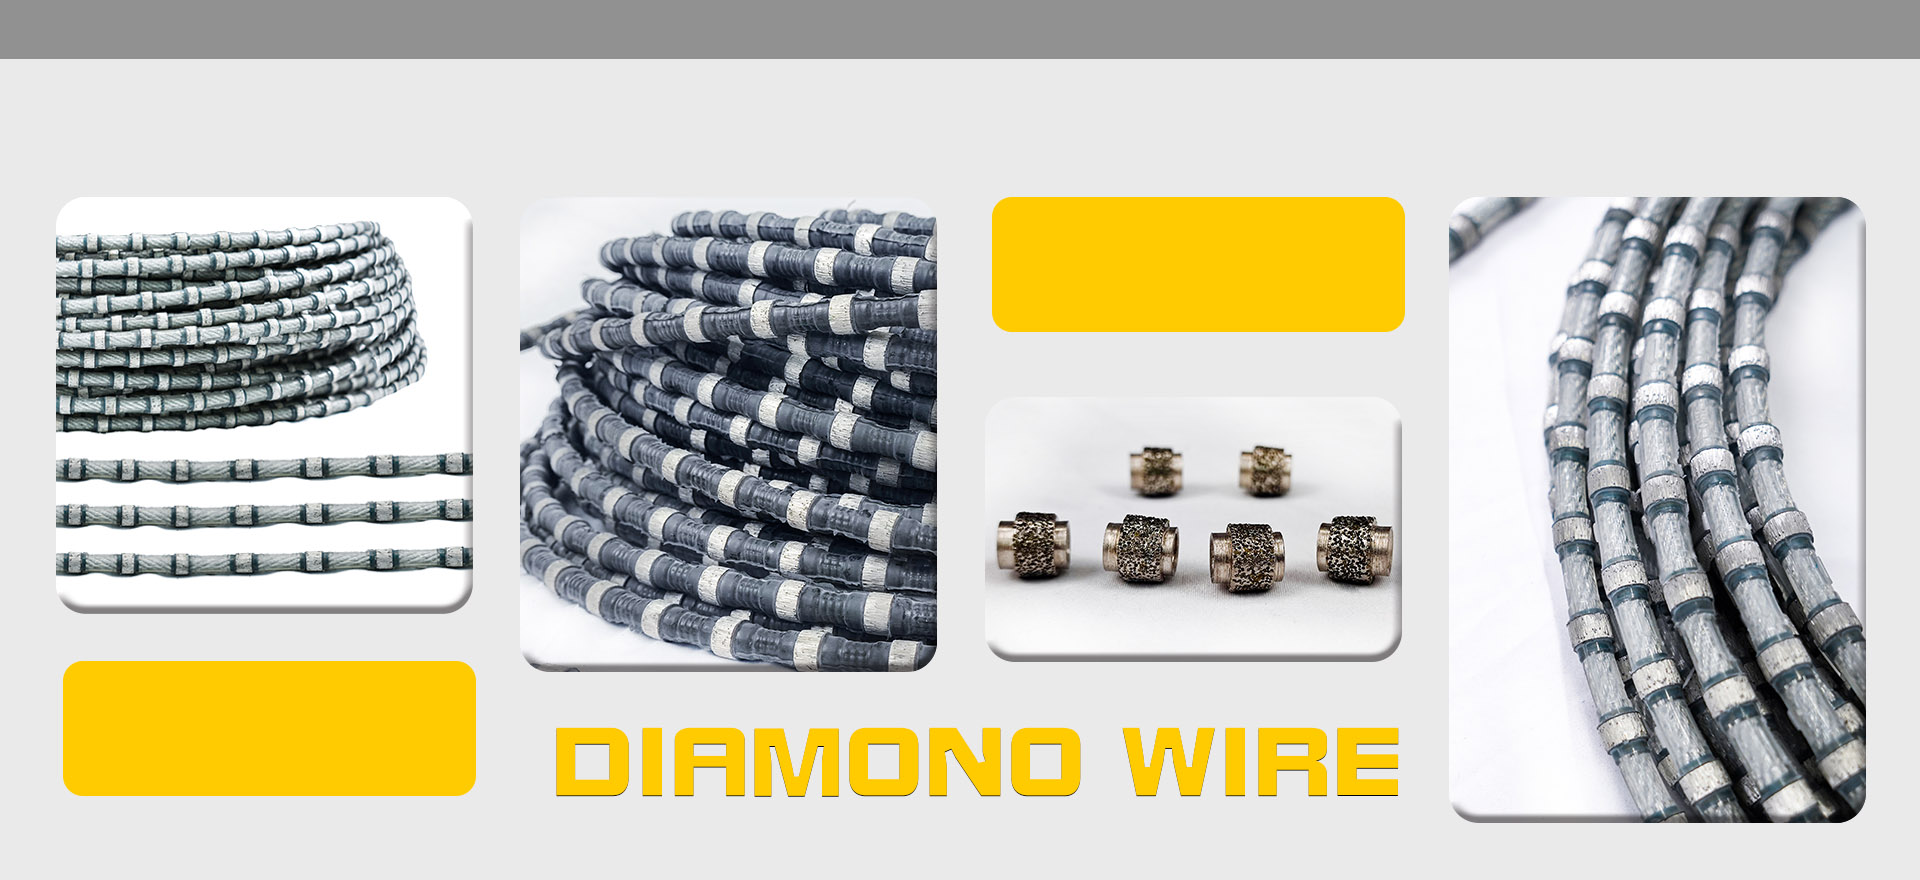 diamond wires、quarry wire、multi wire、mono wire、concrete wire、diamond tools